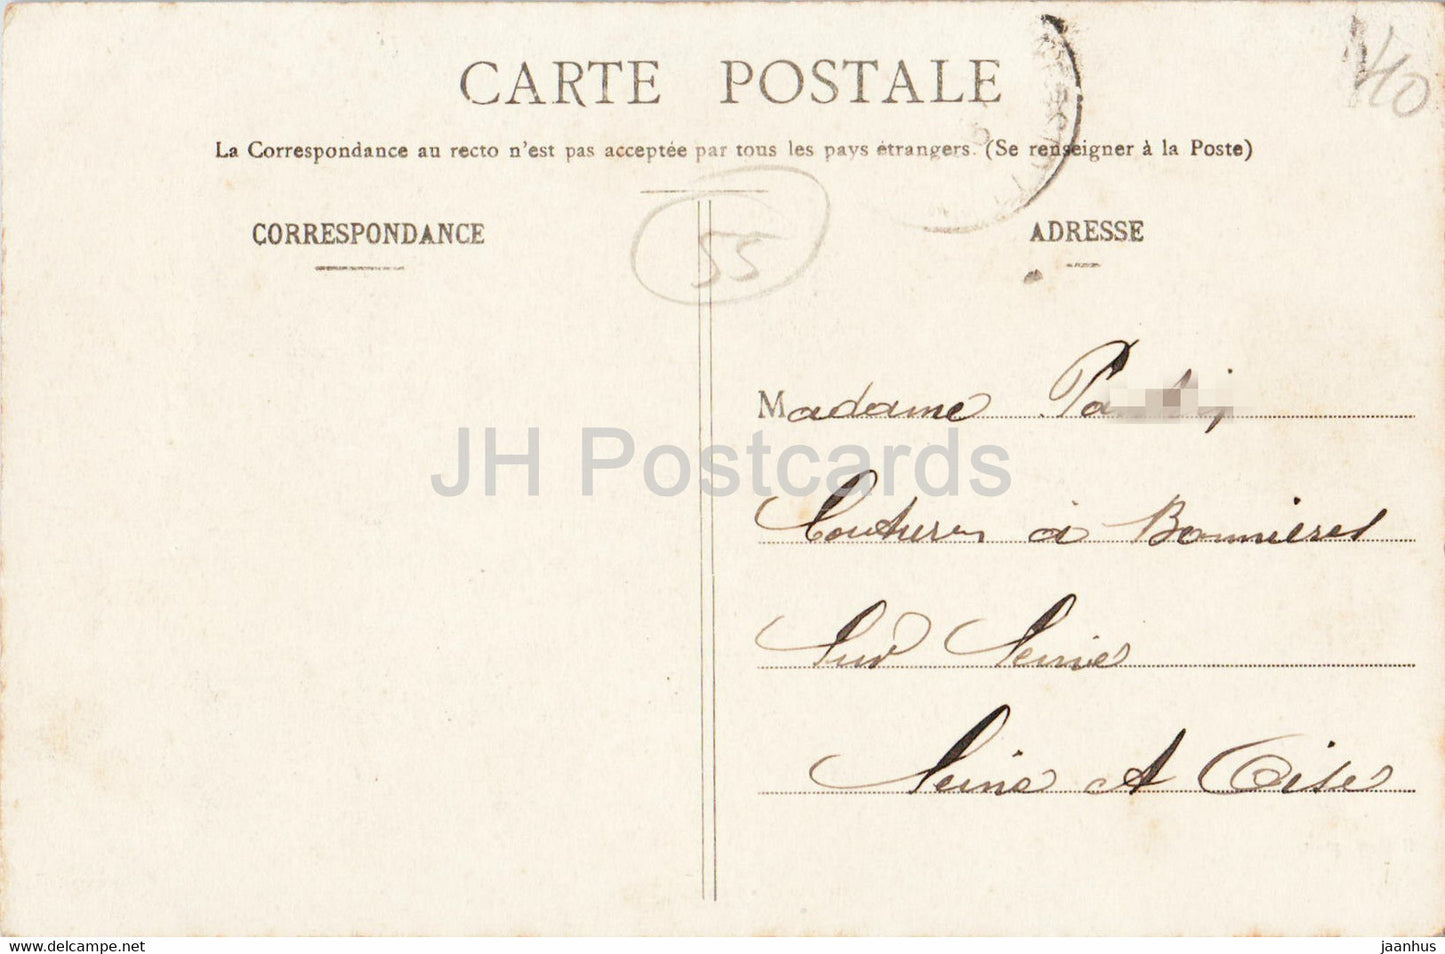 St Mihiel - Le Pont - Les Capucins - A Motlet - bridge - old postcard - 1905 - France - used